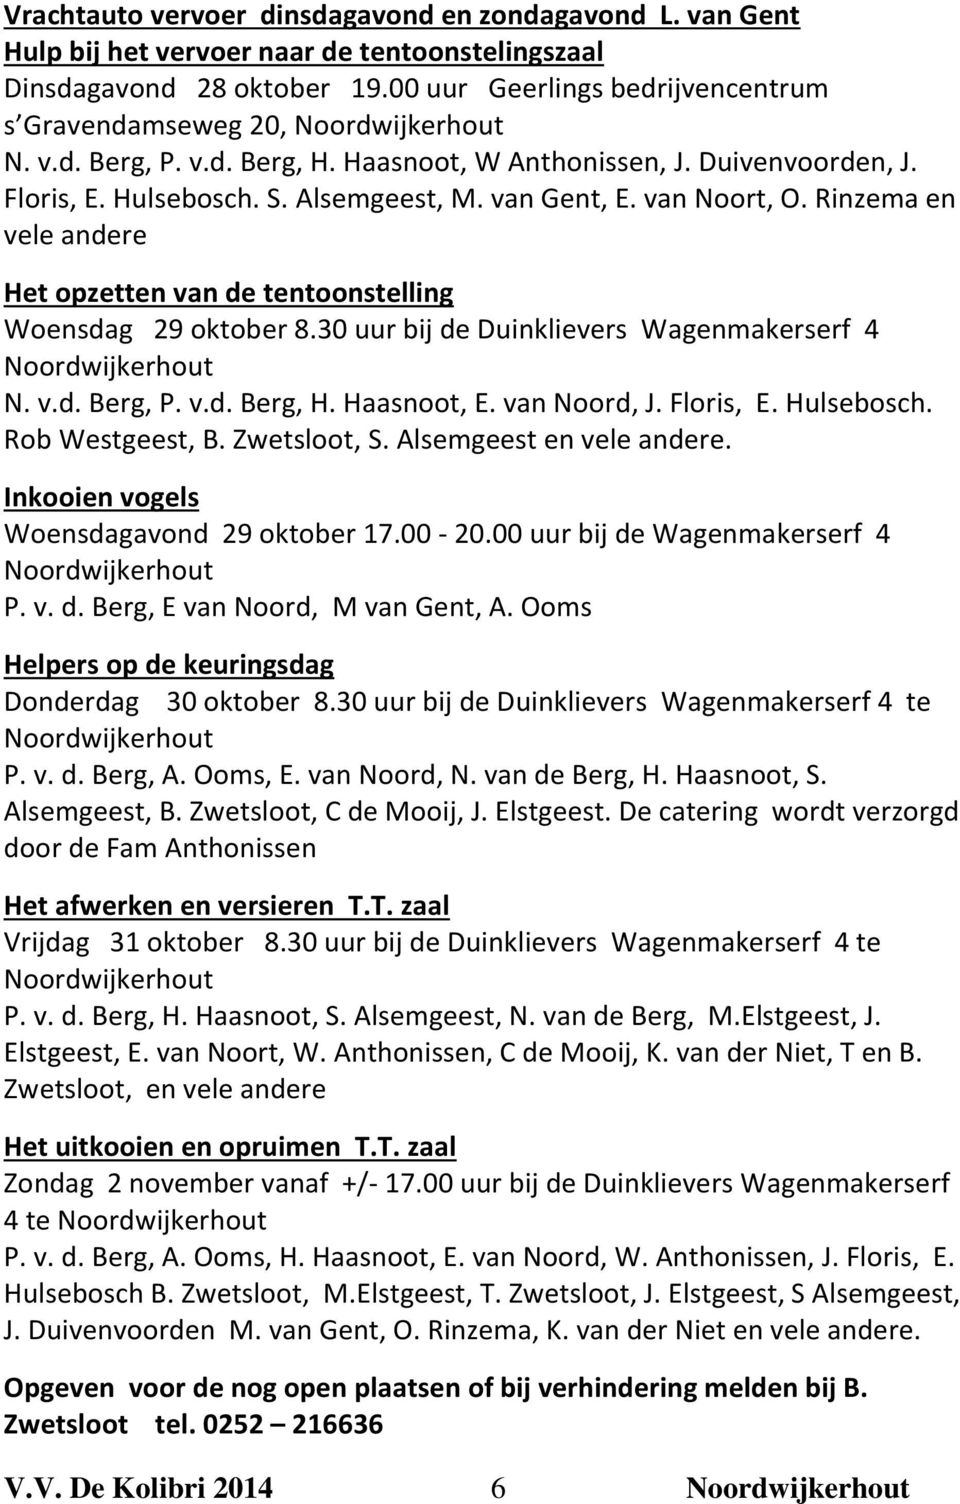 van Gent, E. van Noort, O. Rinzema en vele andere Het opzetten van de tentoonstelling Woensdag 29 oktober 8.30 uur bij de Duinklievers Wagenmakerserf 4 Noordwijkerhout N. v.d. Berg, P. v.d. Berg, H.